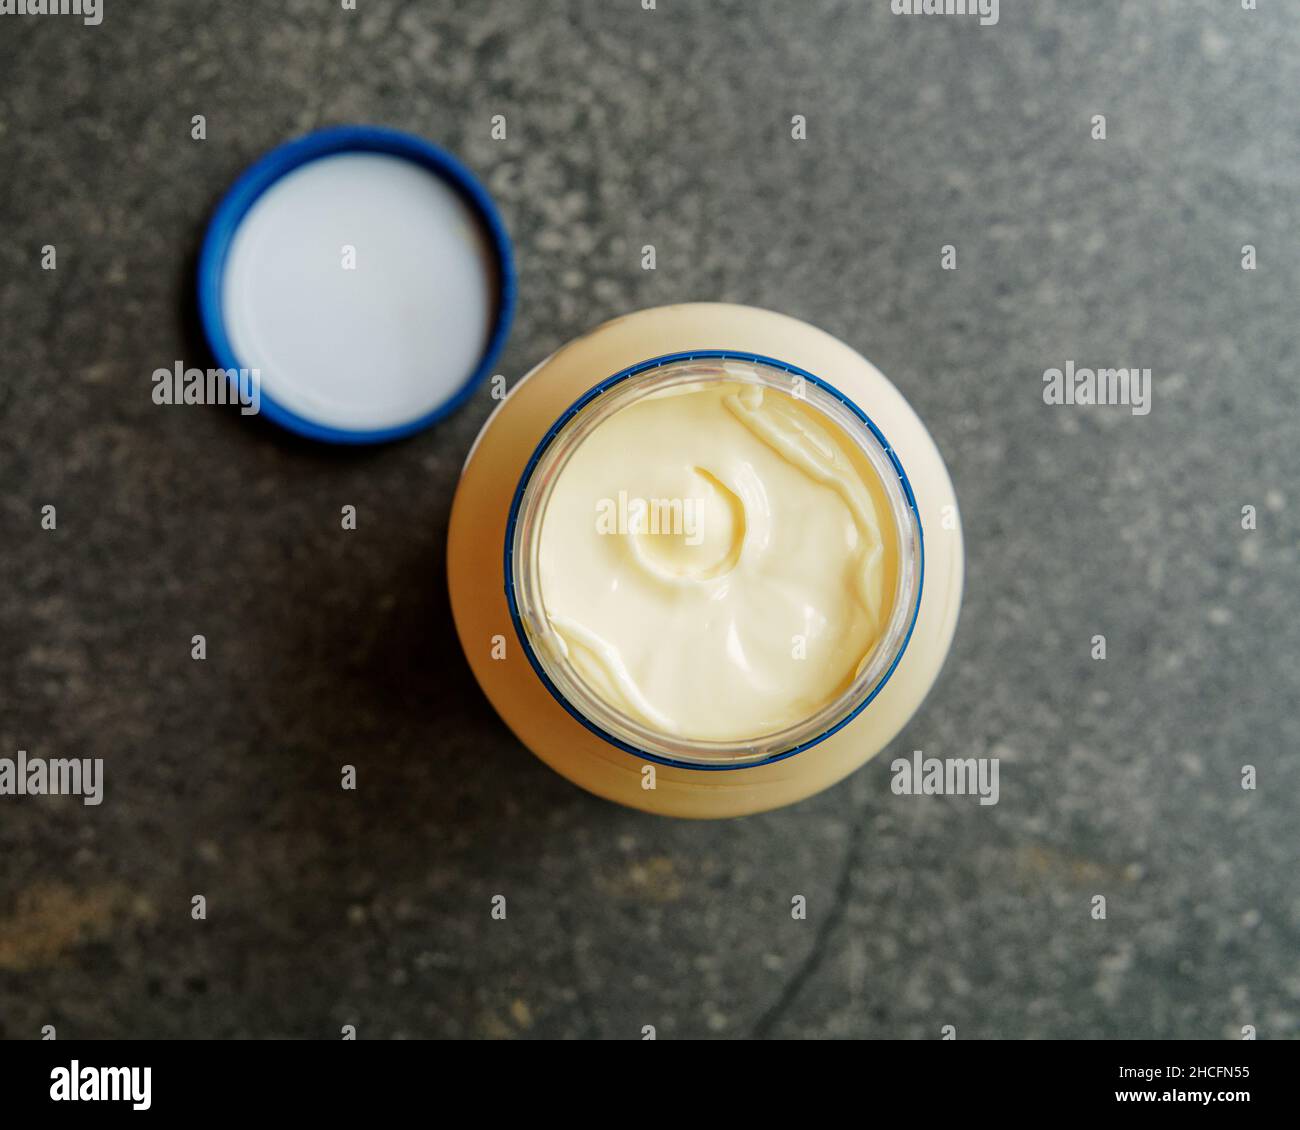 Le meilleur, le mamelon sur le dessus de la mayonnaise dans un récipient récemment ouvert. Banque D'Images